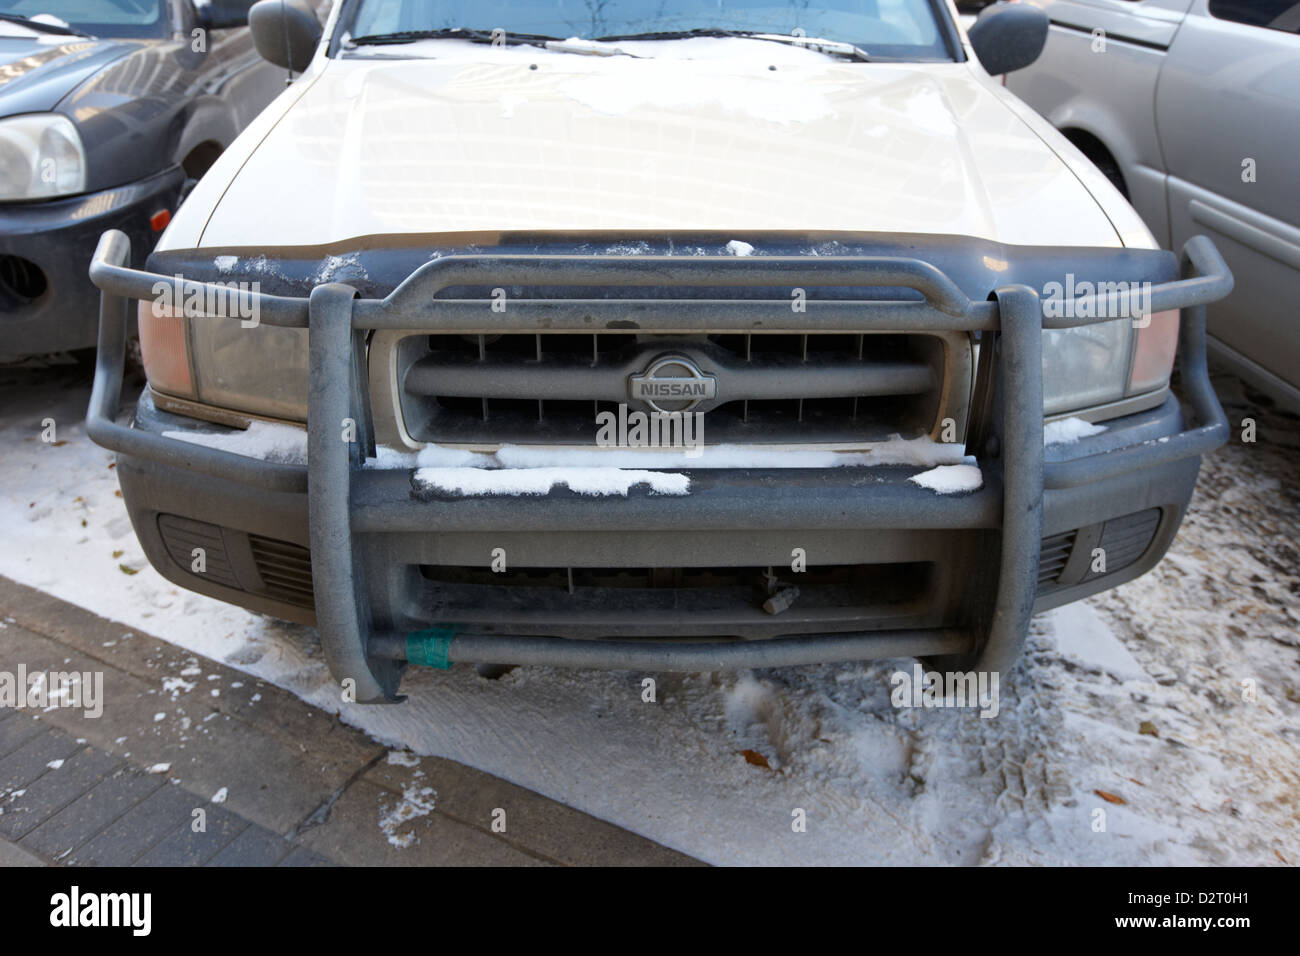 bull bars on truck onstreet parked in winter Saskatoon Saskatchewan Canada Stock Photo